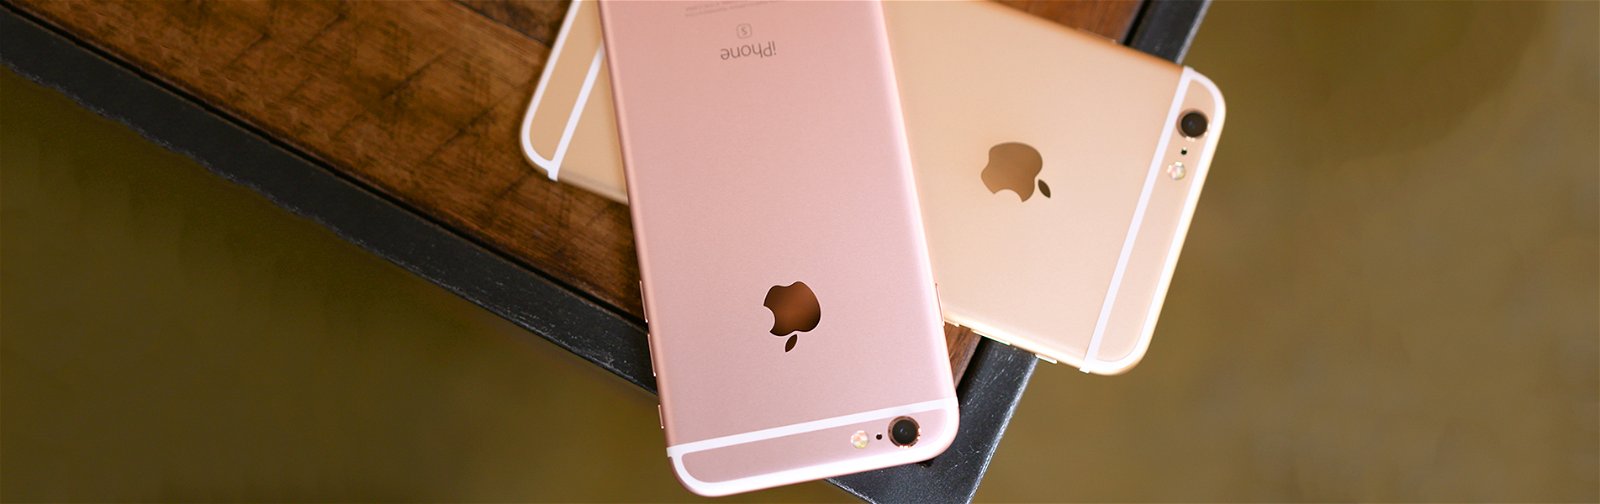 iPhone 6s Plus 32GB Quốc Tế Cũ Giá Rẻ Đà Nẵng, TP HCM